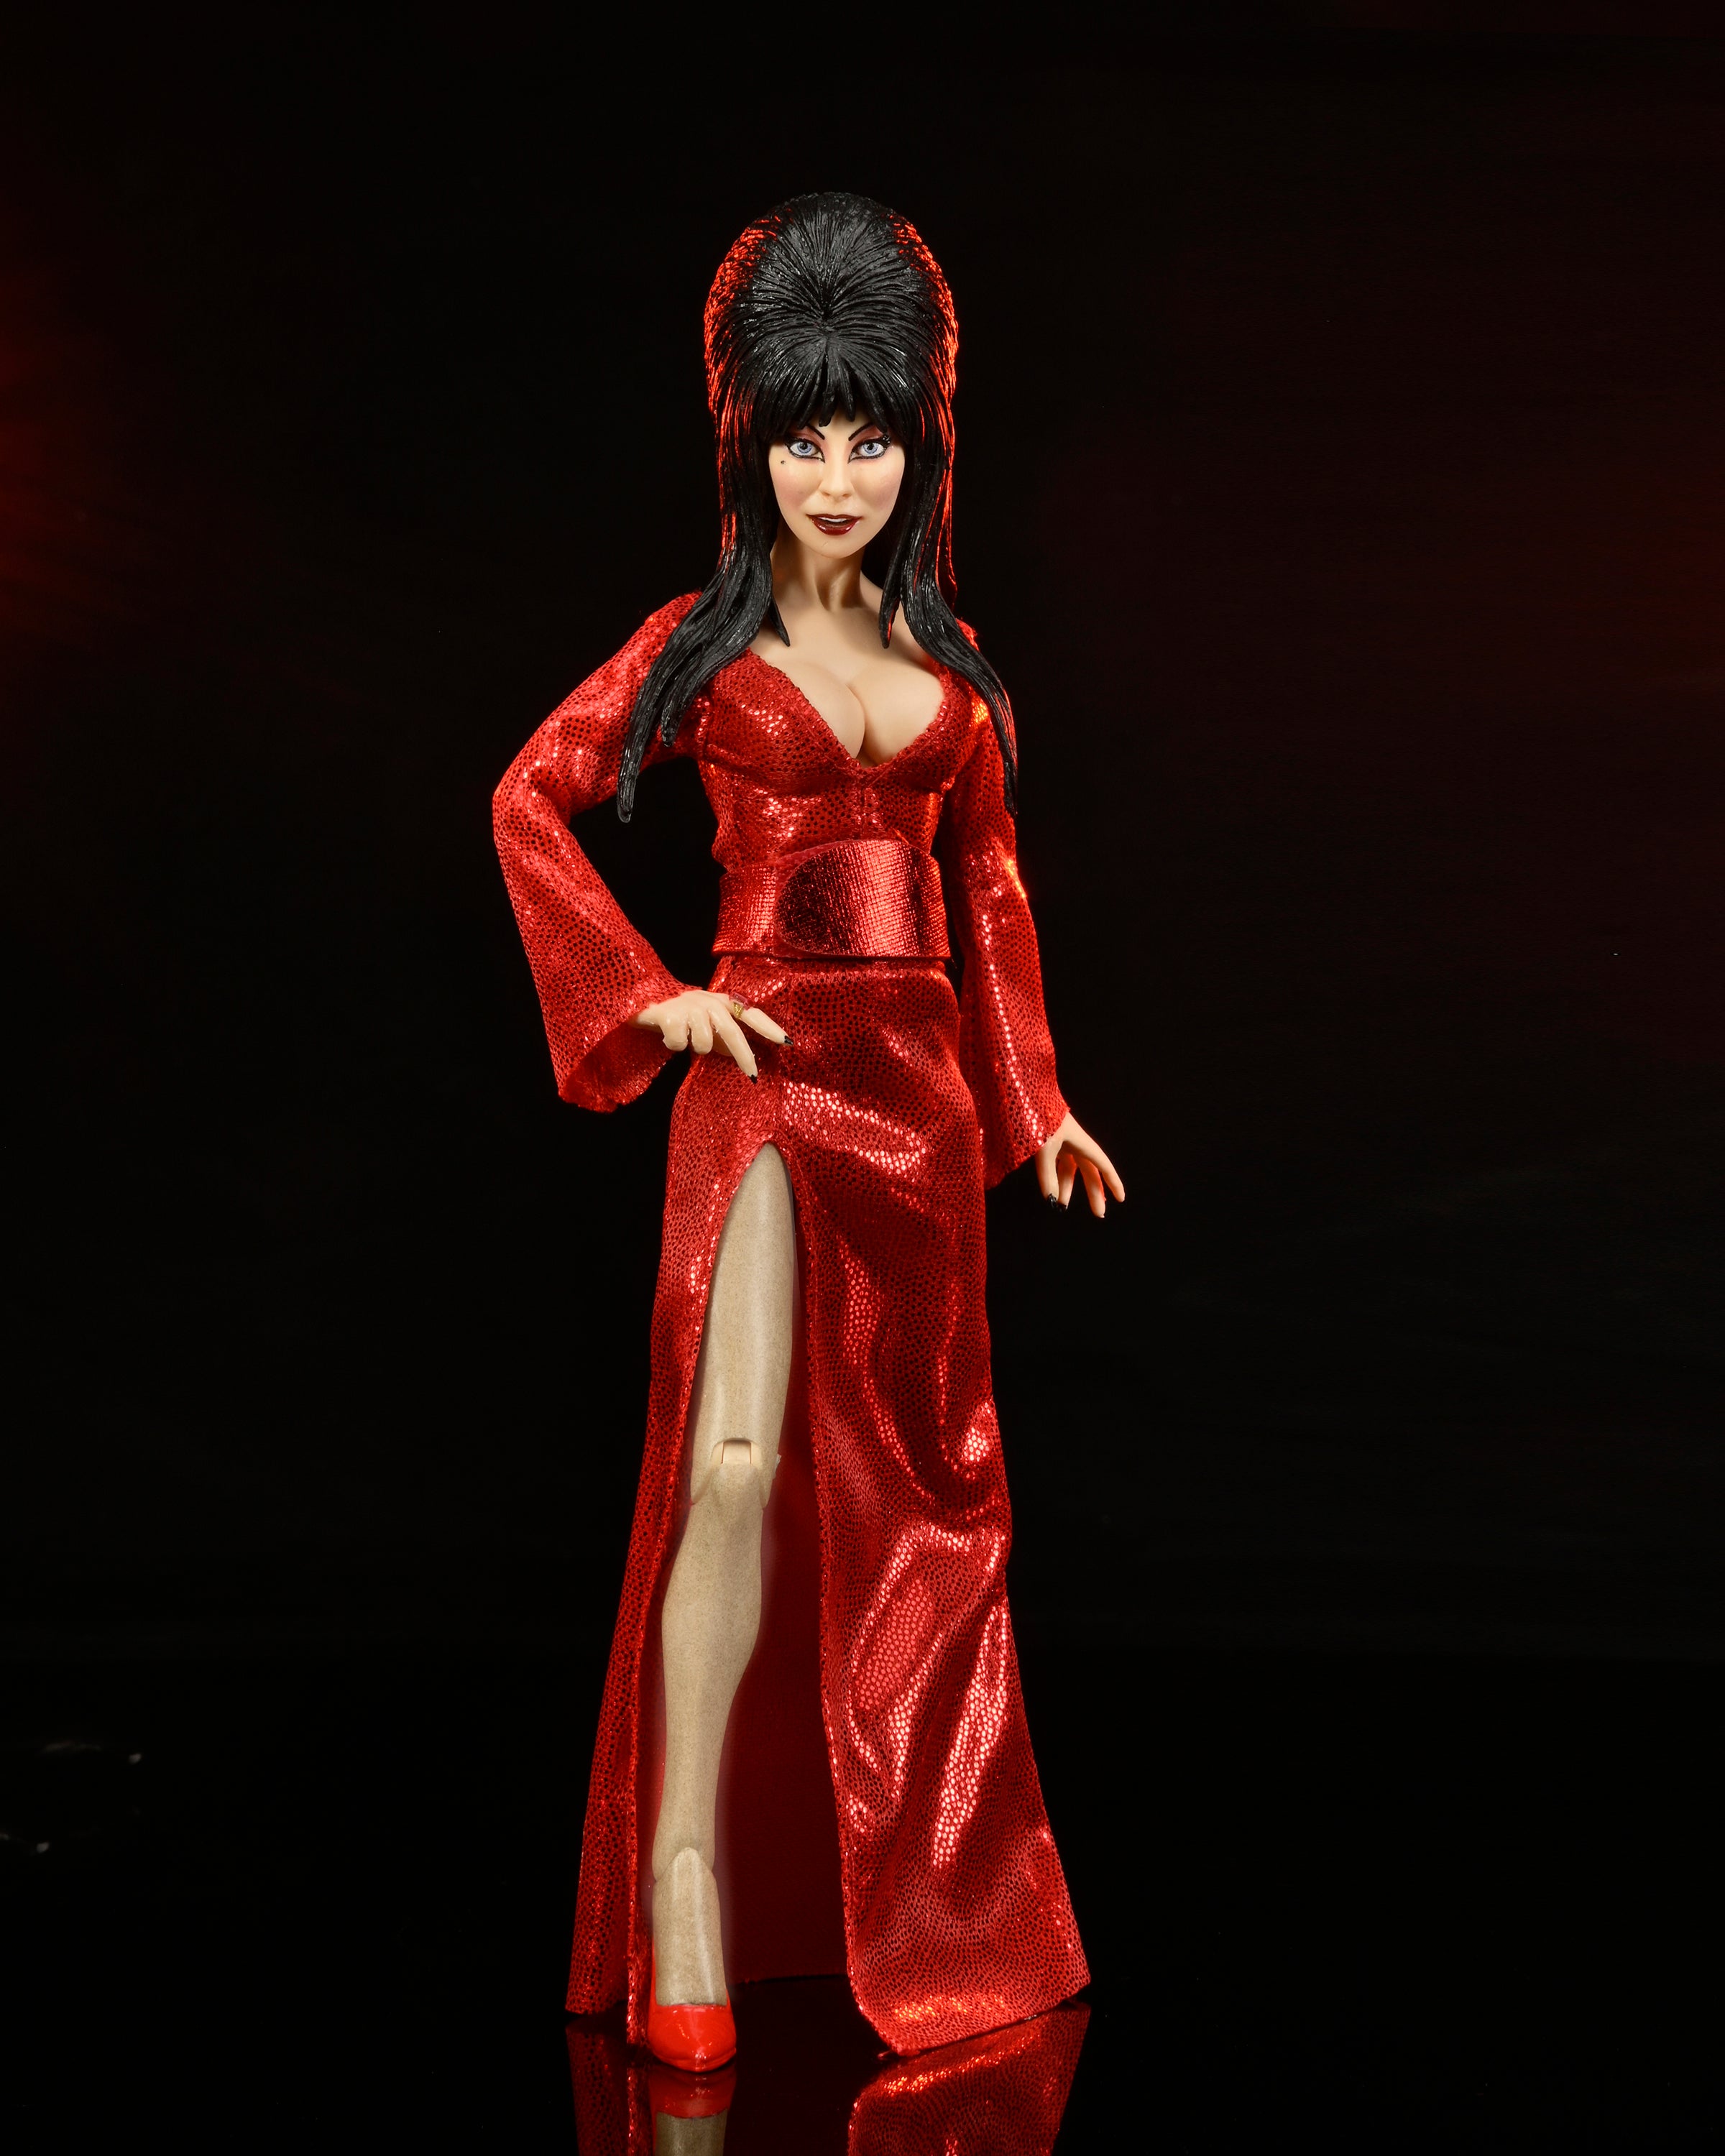 Neca Figura de Accion Vestida: Mistress of the Dark - Elvira ‚Äì Elvira Con Vestido Rojo 8 Pulgadas